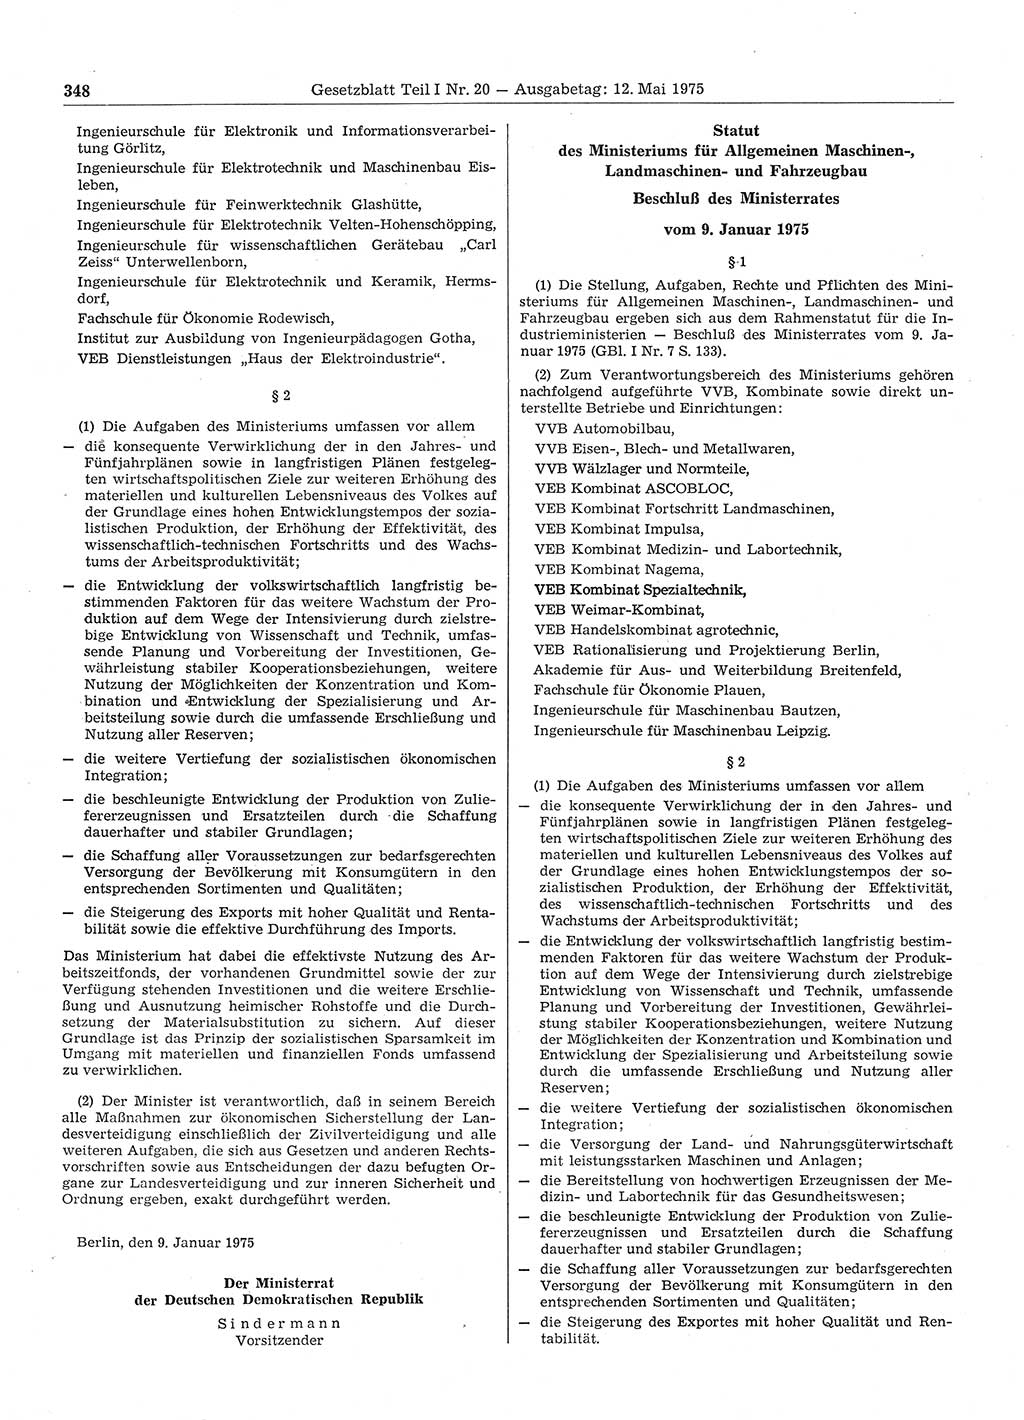 Gesetzblatt (GBl.) der Deutschen Demokratischen Republik (DDR) Teil Ⅰ 1975, Seite 348 (GBl. DDR Ⅰ 1975, S. 348)